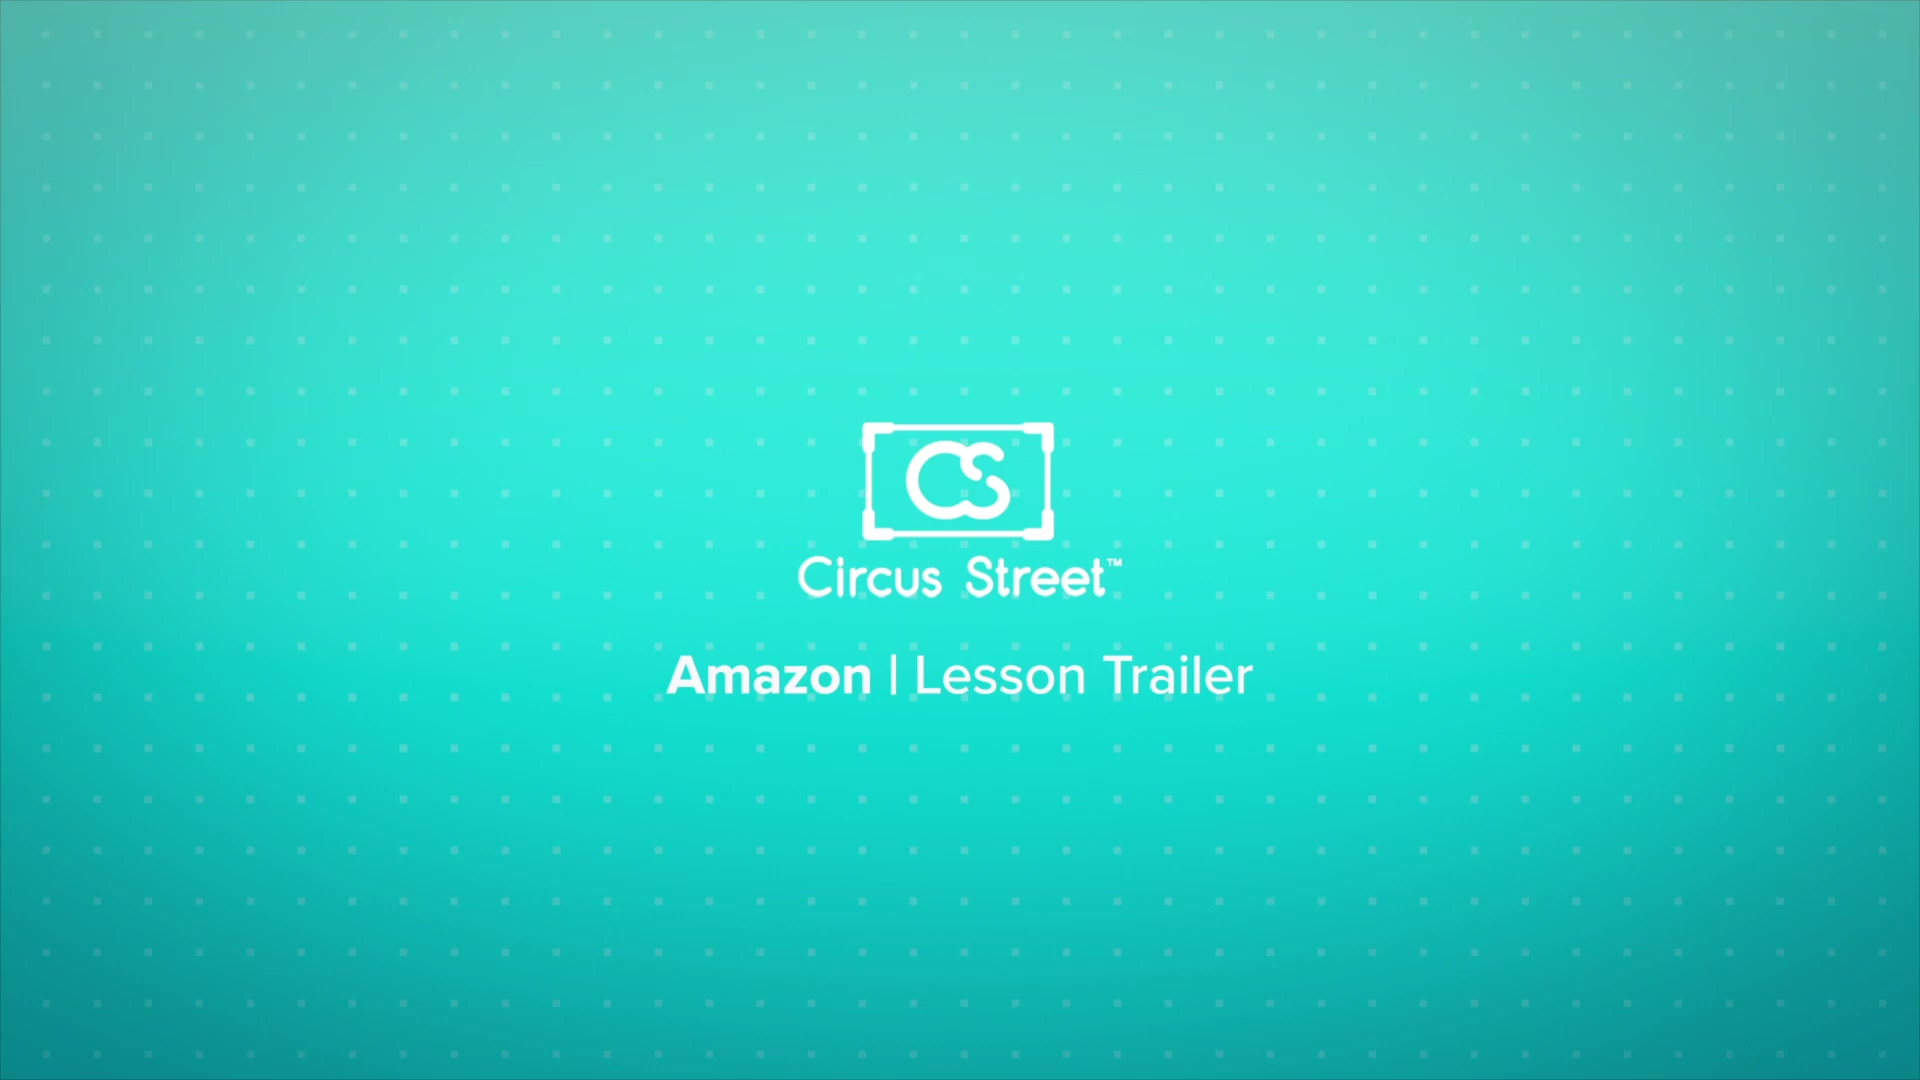 Amazon Lesson Trailer